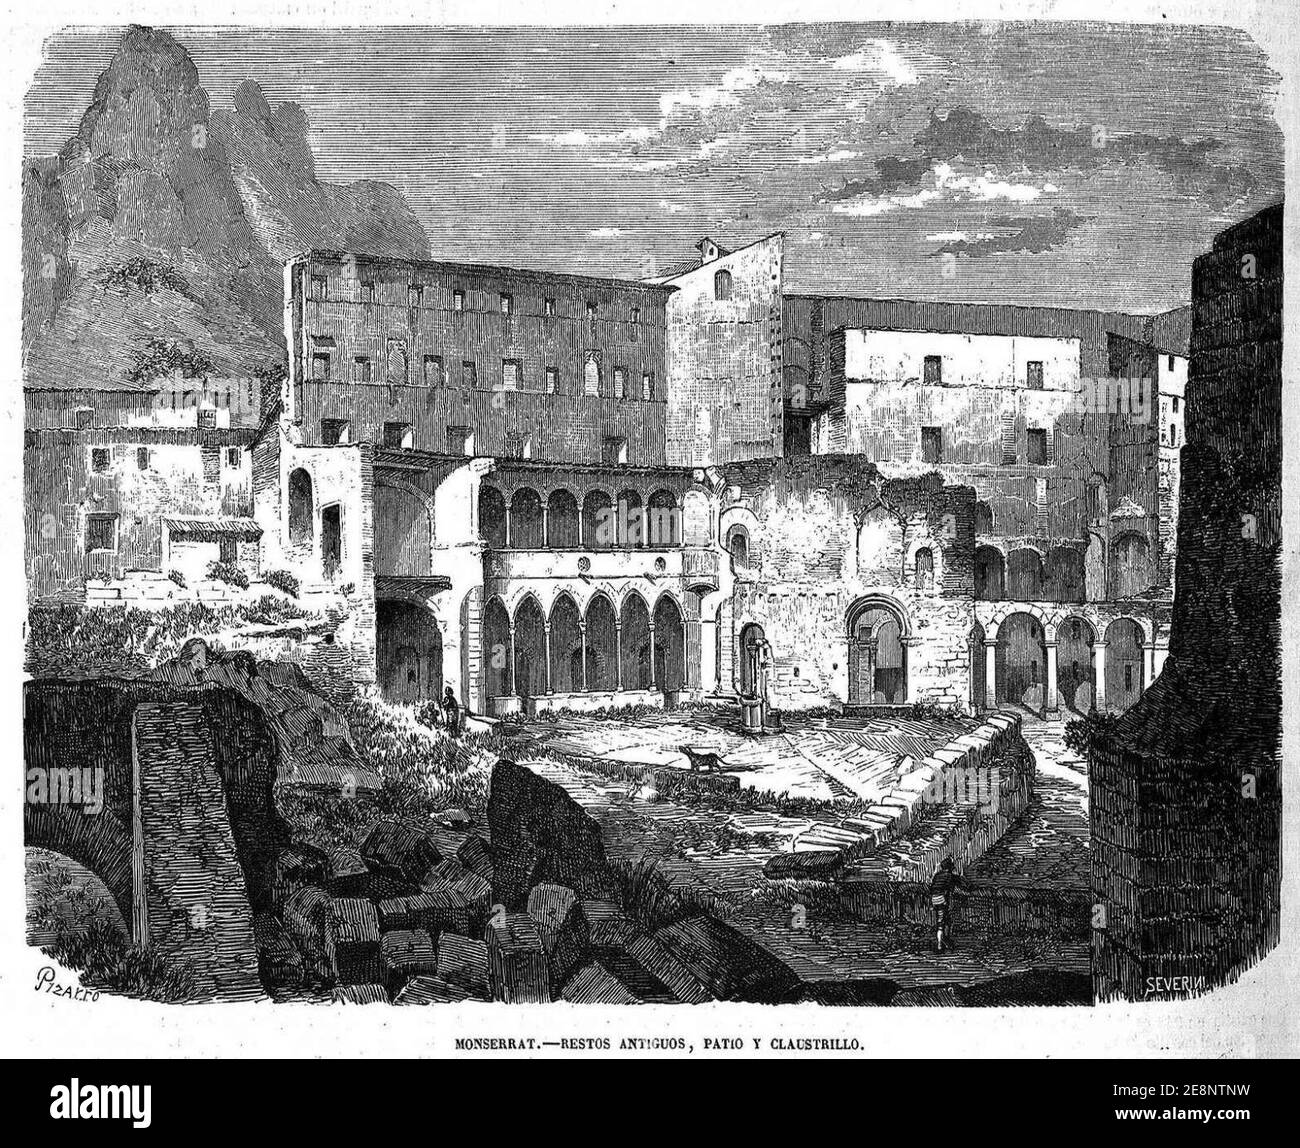 Montserrat, restos antiguos, patio y claustrillo, Stock Photo